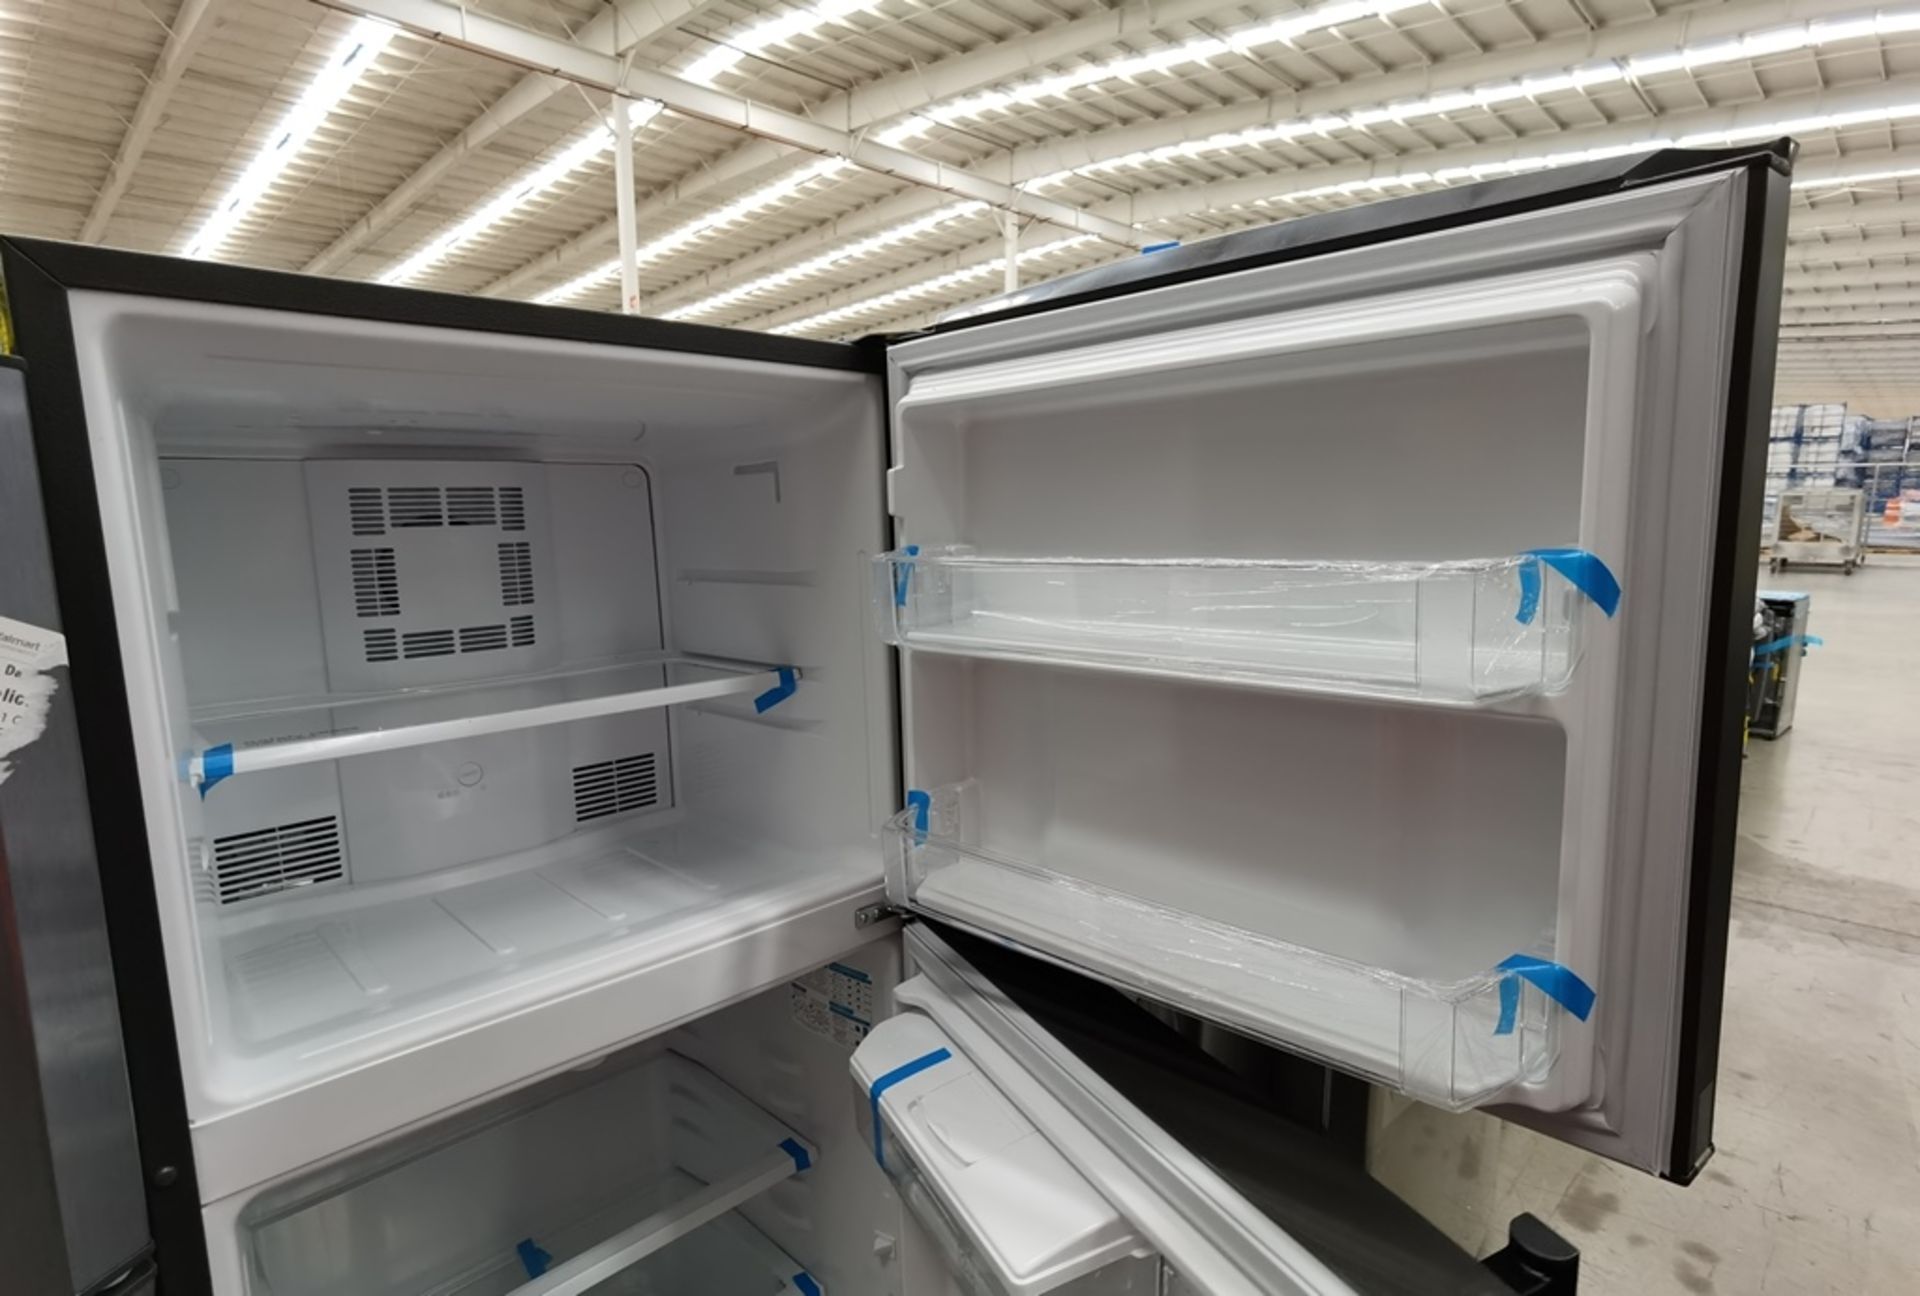 Lote De 2 Refrigeradores Contiene: 1 Refrigerador Marca Mabe, Modelo RME360FD, Serie 2205B503535, C - Image 7 of 17